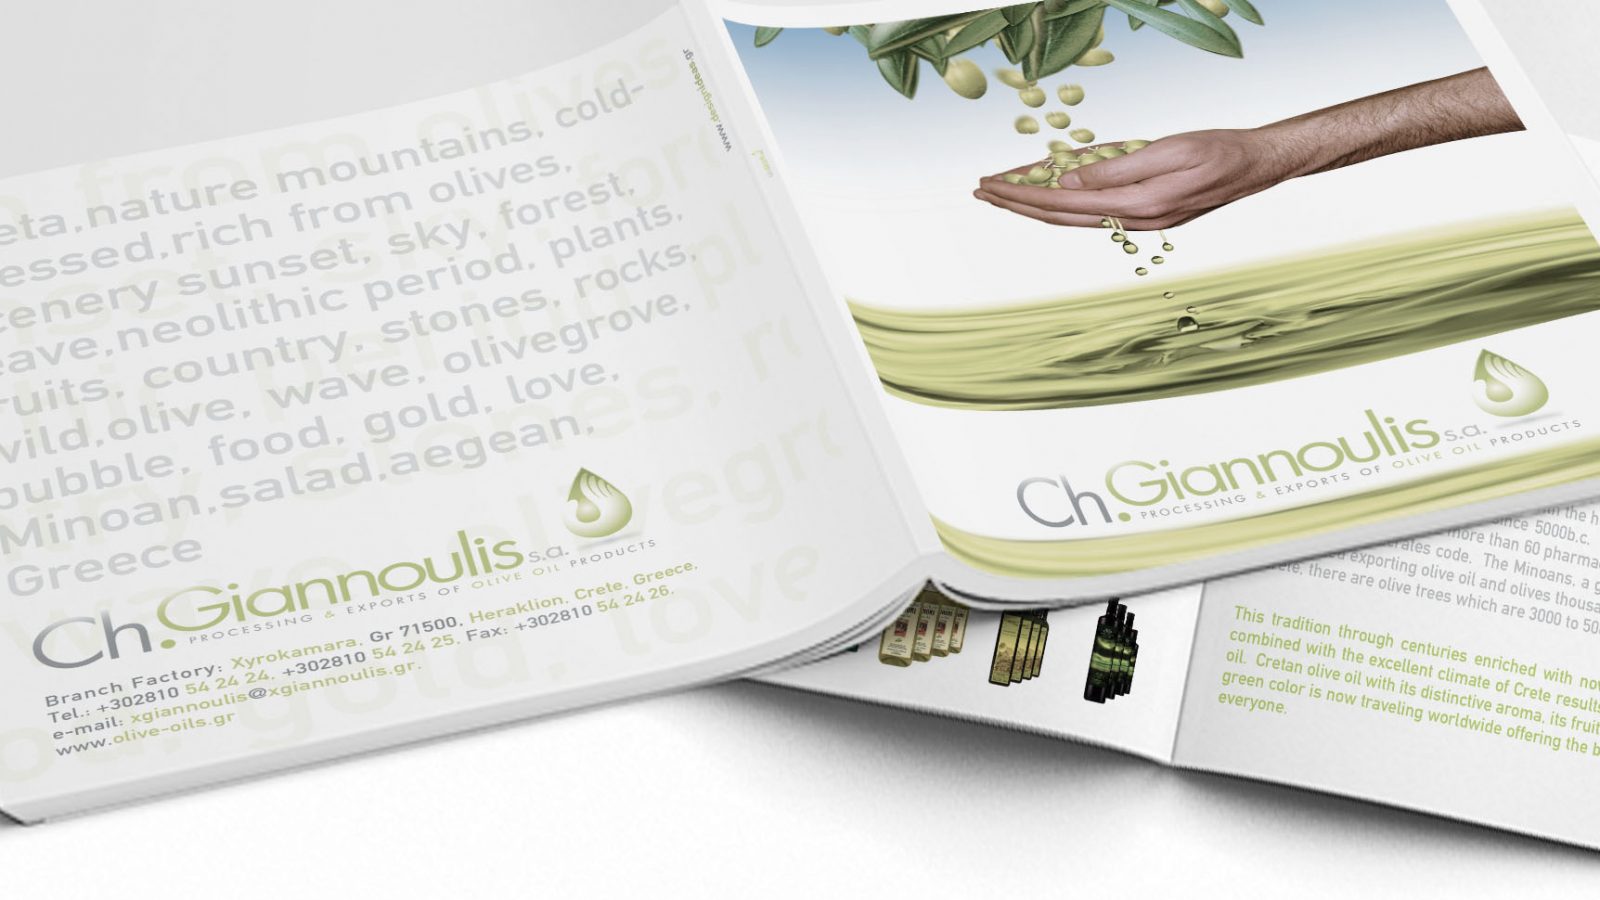 Φιορετζης Δημητρης γραφιστας Logo Branding Packaging Illustration Web Σχεδιασμός Λογοτύπου Συσκευασίας graphic design fioretzis dimitris olive oil package design